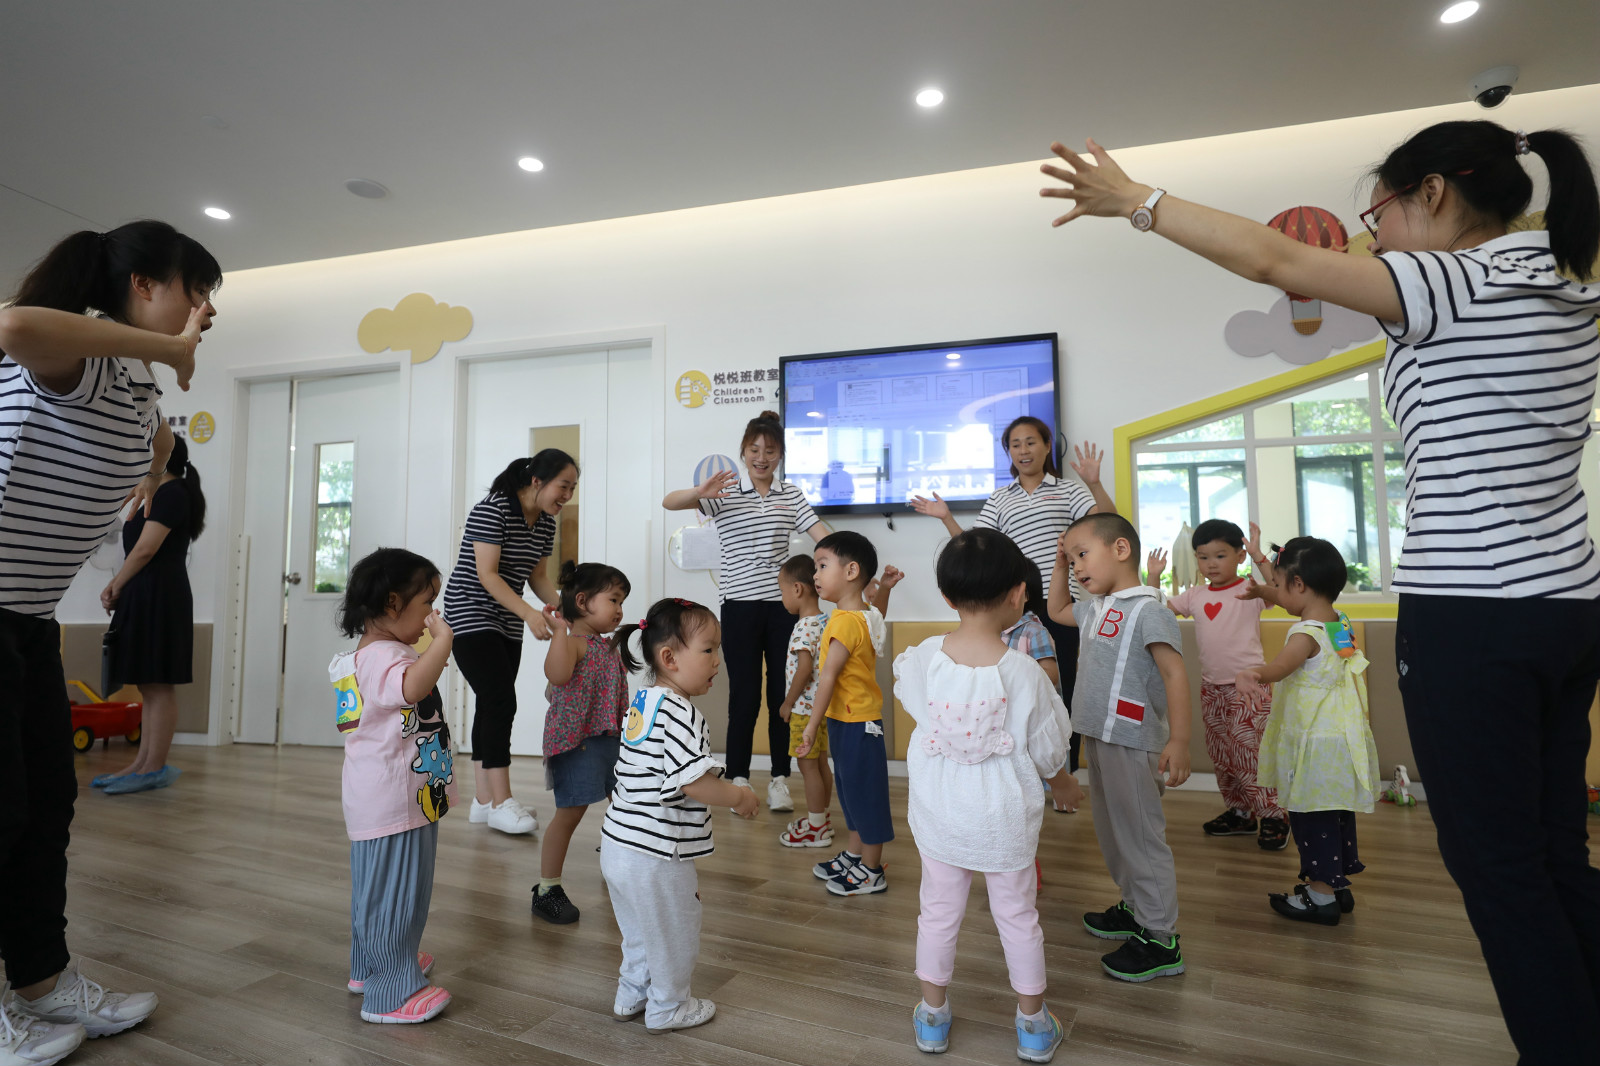 上海徐汇区华泾托育园的孩子们正在活动。（摄影：顾超）_meitu_1.jpg